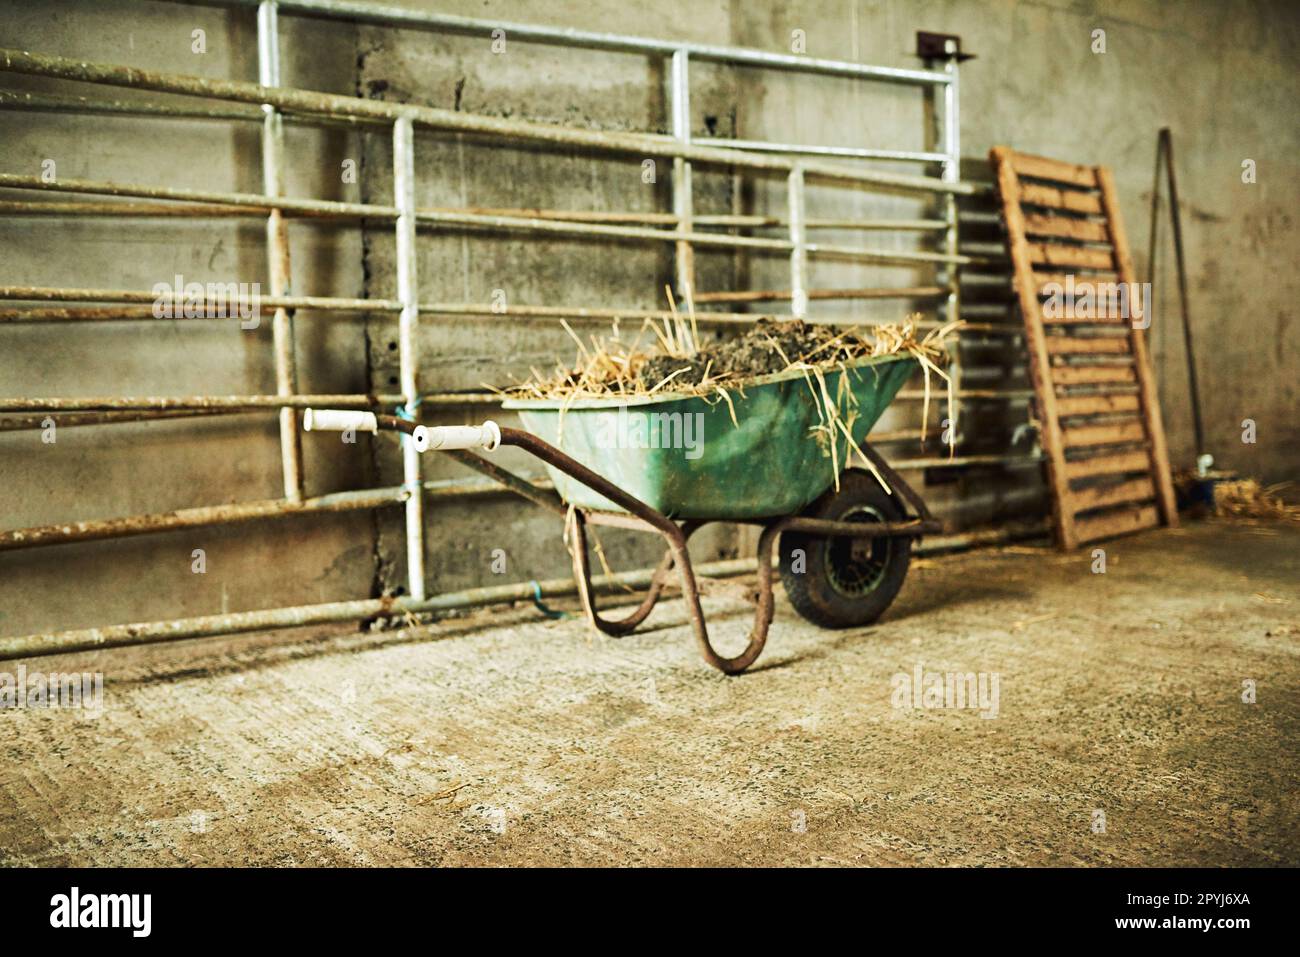 Utilisez une brouette pour transporter des objets autour de la ferme. une brouette remplie de terre et de foin à l'intérieur d'une grange sur une ferme. Banque D'Images